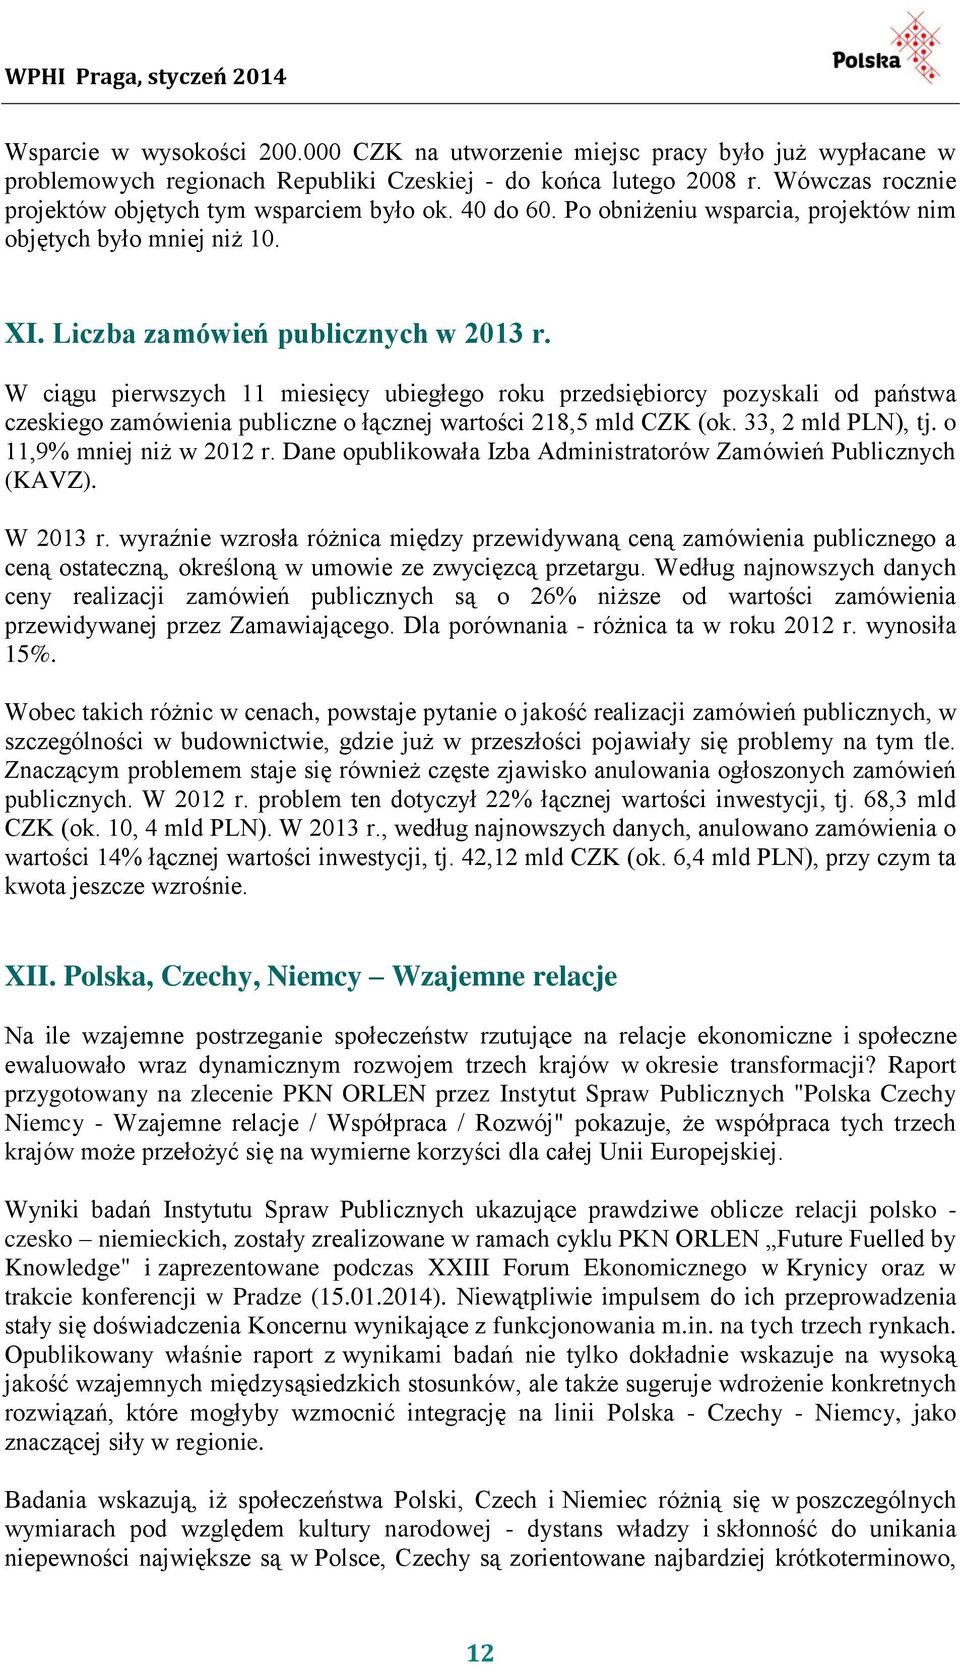 W ciągu pierwszych 11 miesięcy ubiegłego roku przedsiębiorcy pozyskali od państwa czeskiego zamówienia publiczne o łącznej wartości 218,5 mld CZK (ok. 33, 2 mld PLN), tj. o 11,9% mniej niż w 2012 r.